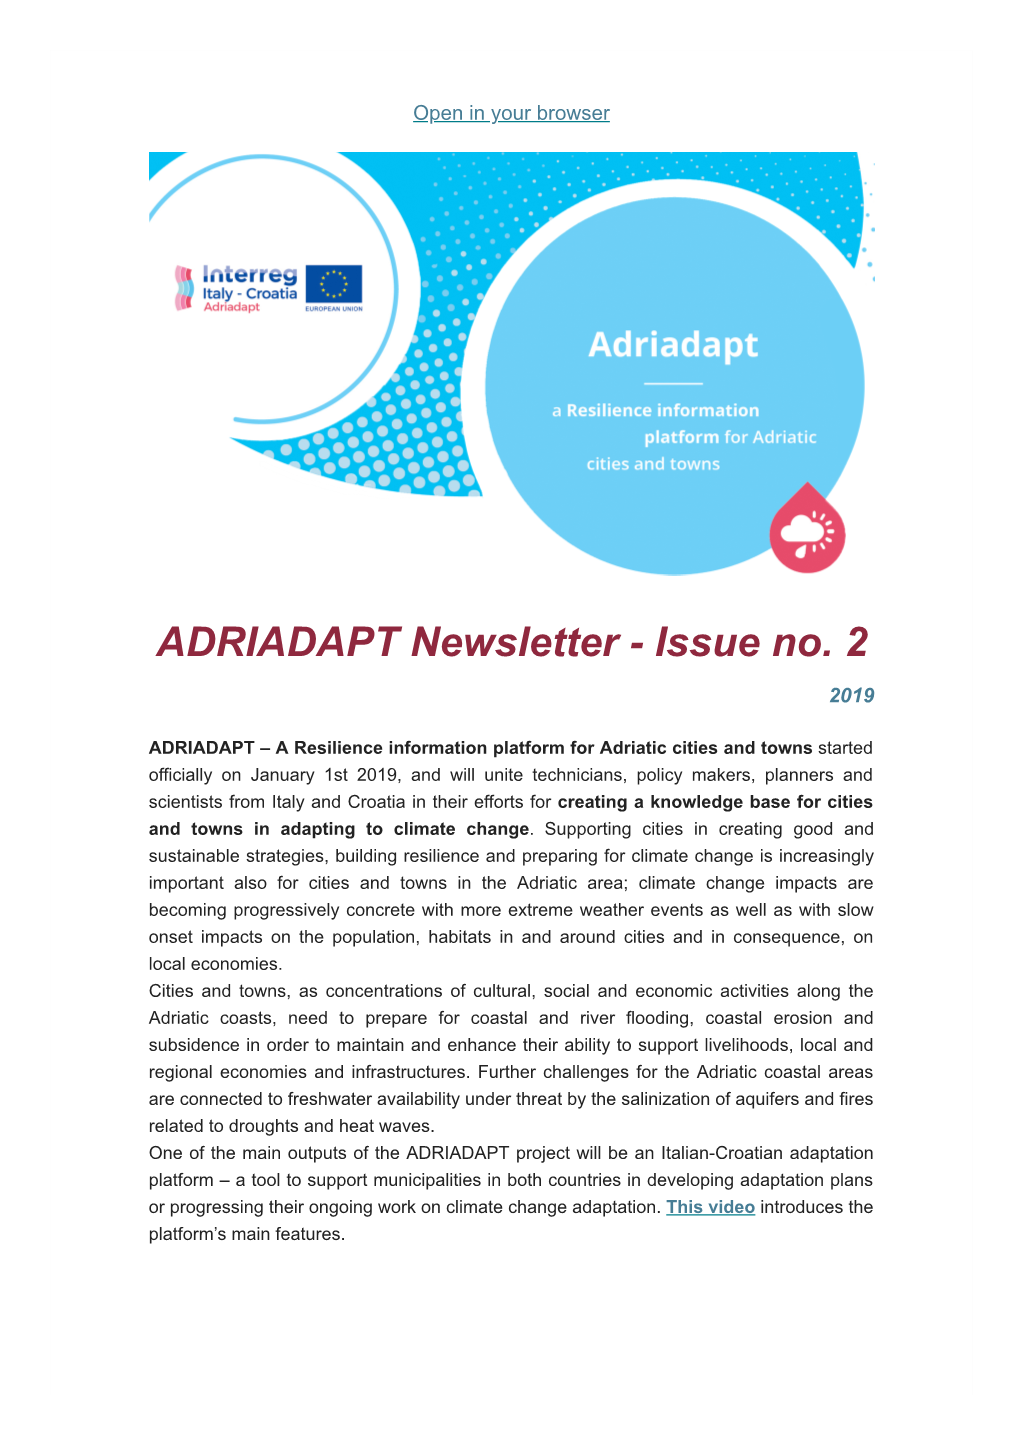 ADRIADAPT Newsletter - Issue No